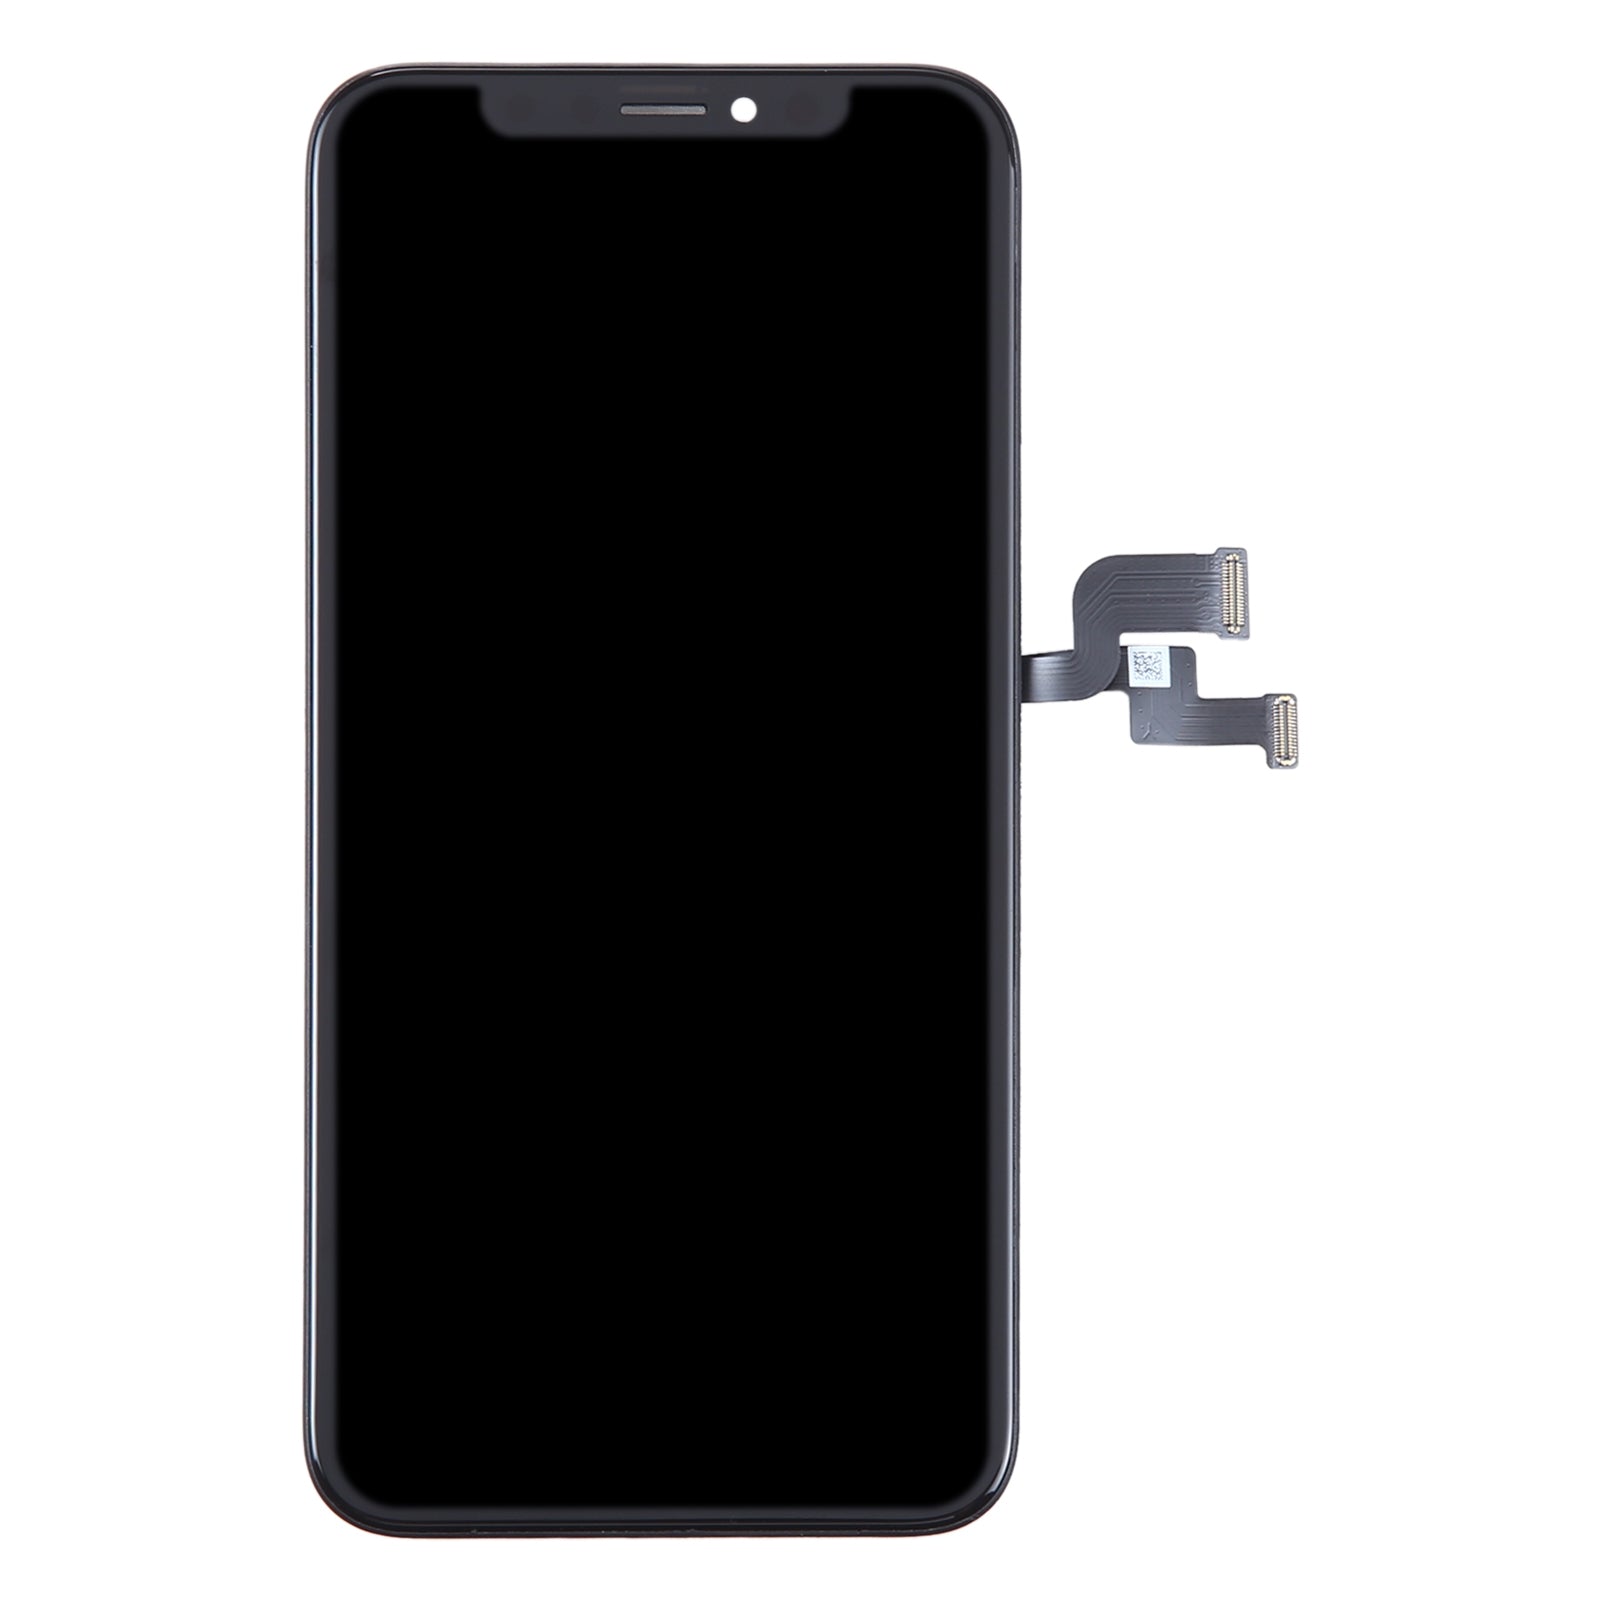 Plein écran DUR OLED + numériseur tactile iPhone XS